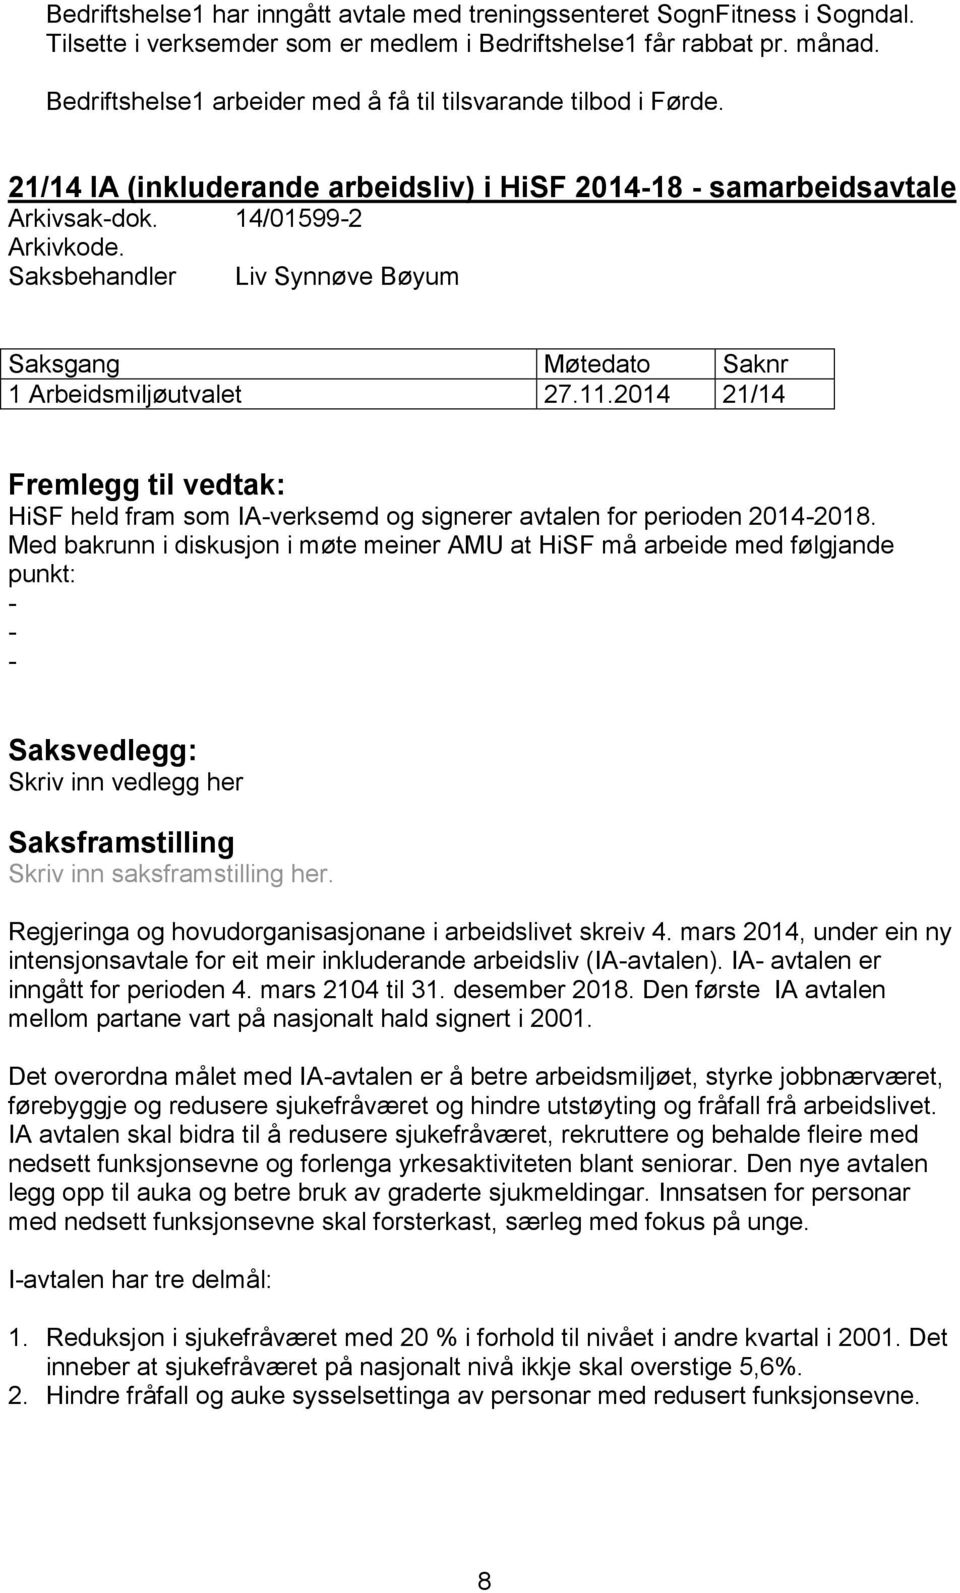 Saksbehandler Liv Synnøve Bøyum Saksgang Møtedato Saknr 1 Arbeidsmiljøutvalet 27.11.2014 21/14 Fremlegg til vedtak: HiSF held fram som IA-verksemd og signerer avtalen for perioden 2014-2018.